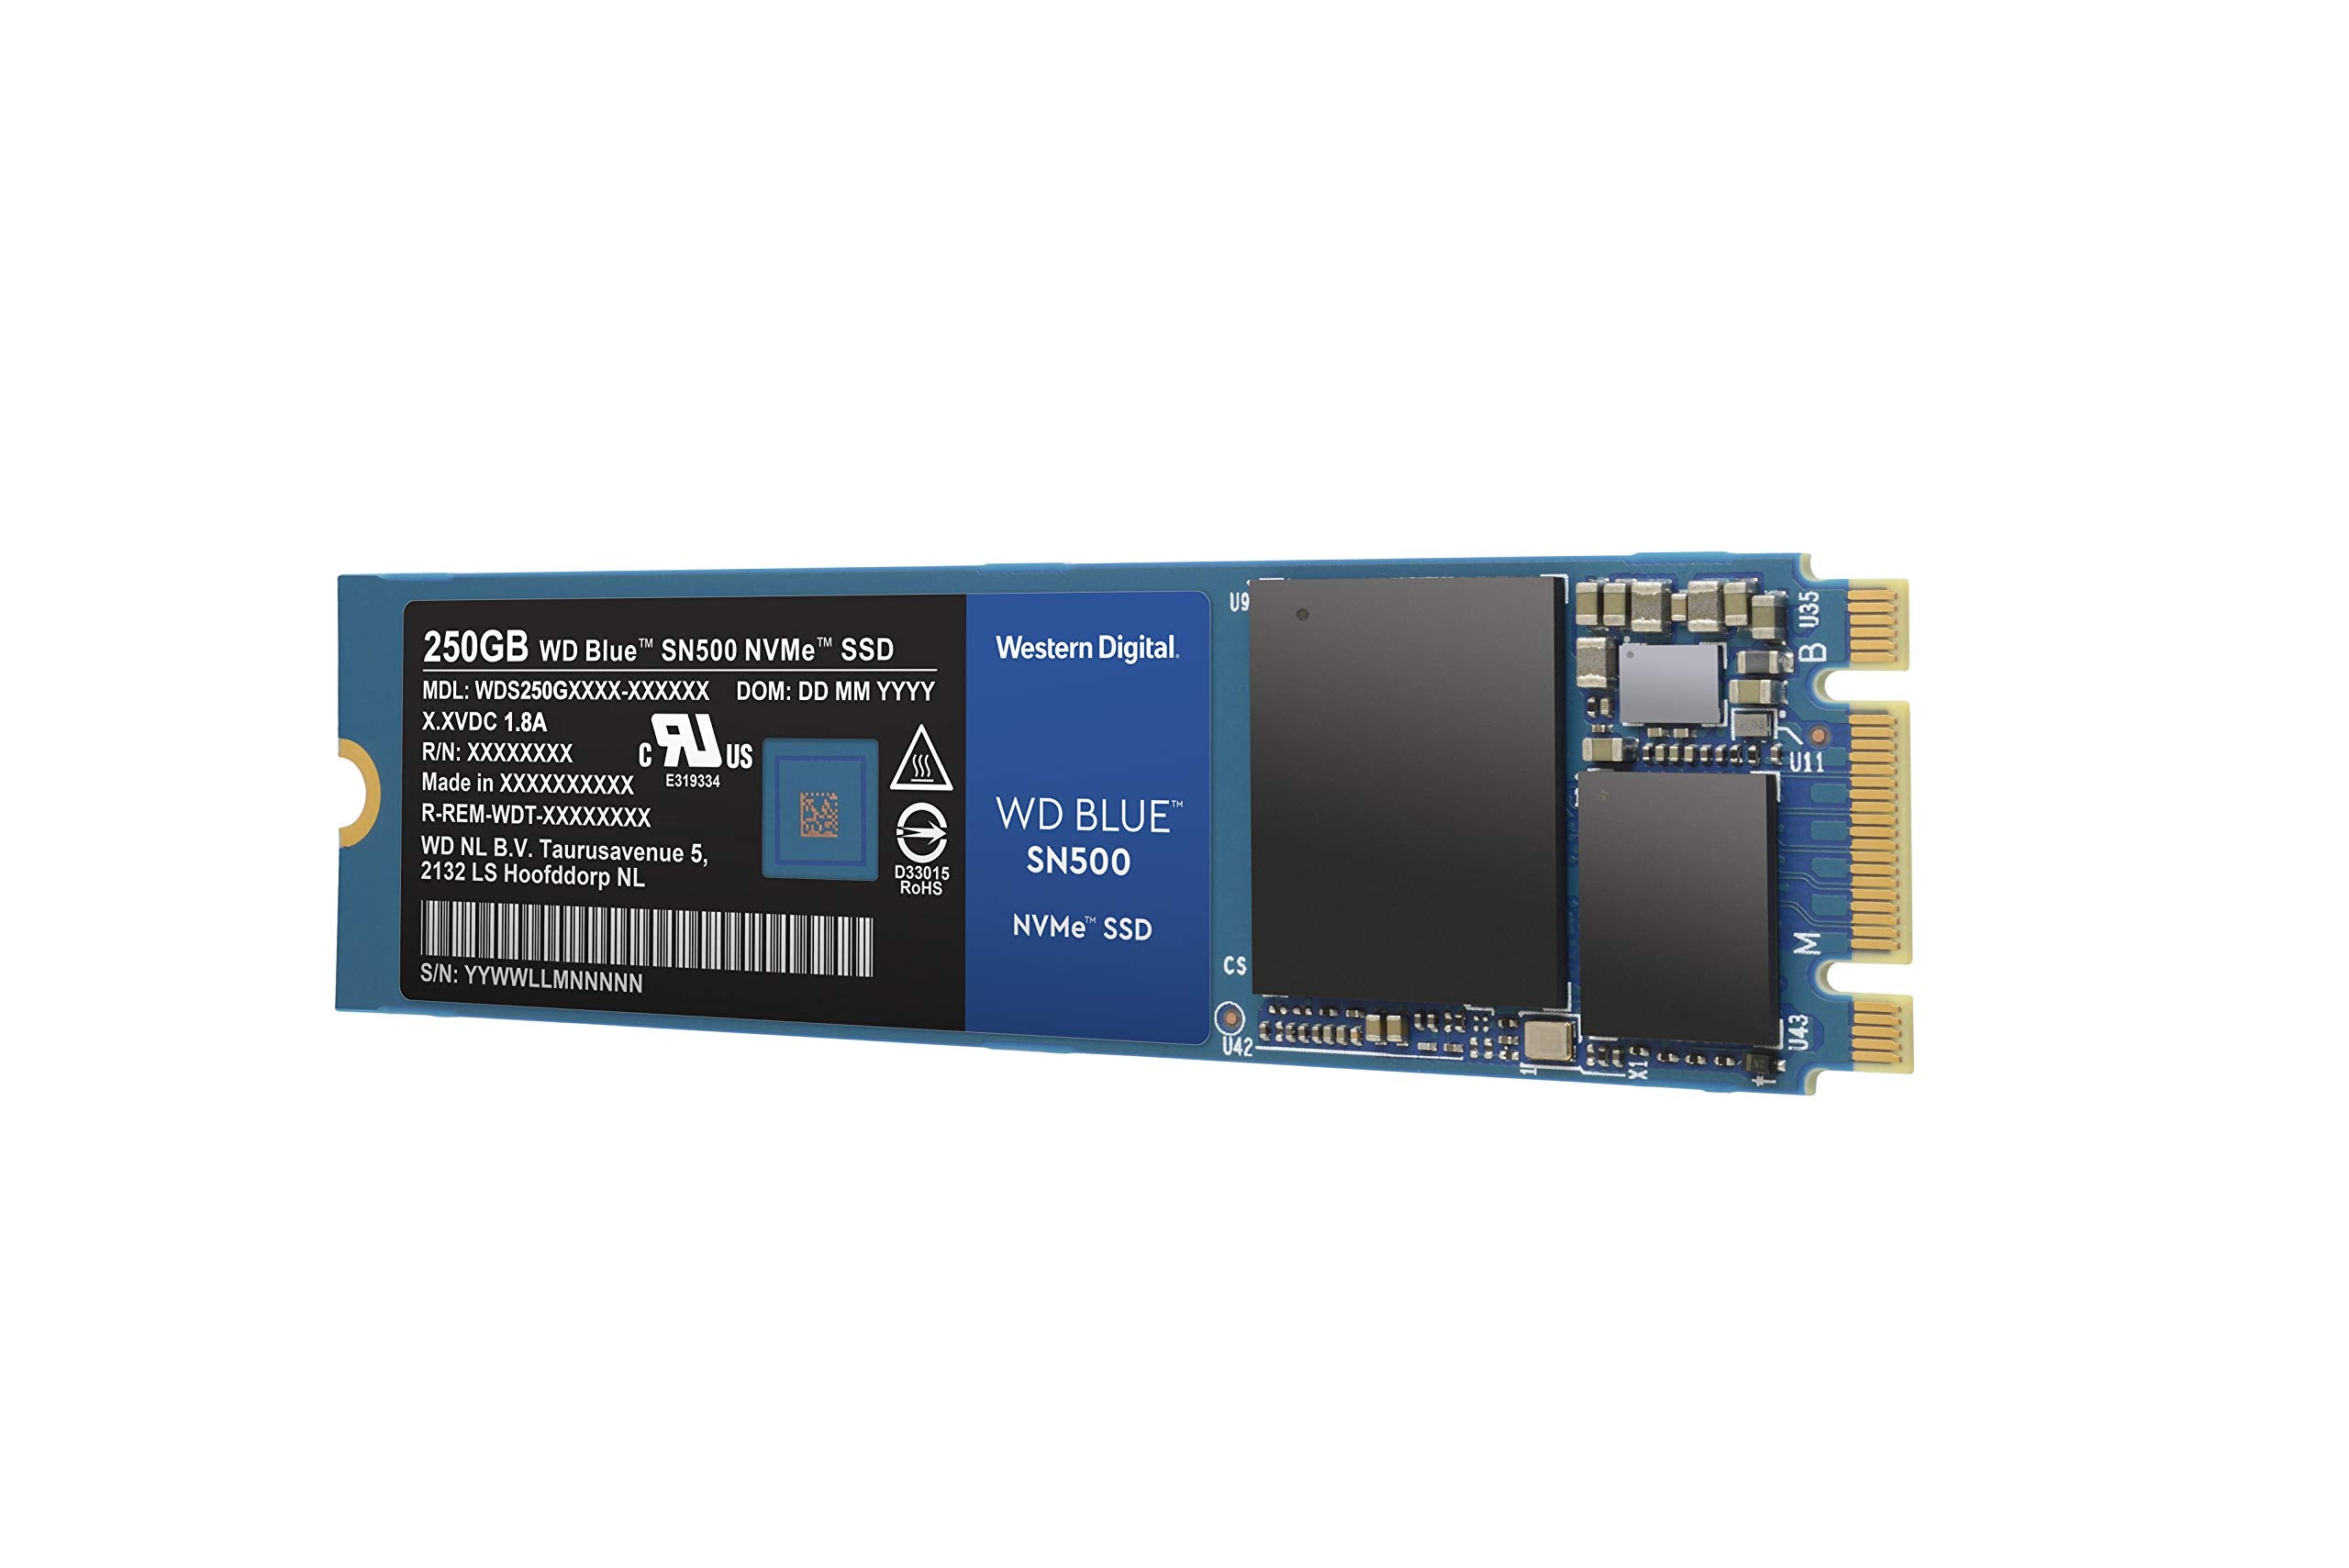 Western Digital 250GB WD Blue SN500 NVMe Internal SSD - Gen3 PCIe, M.2 2280, 3D NAND, Up to 1700 MB/s - WDS250G1B0C